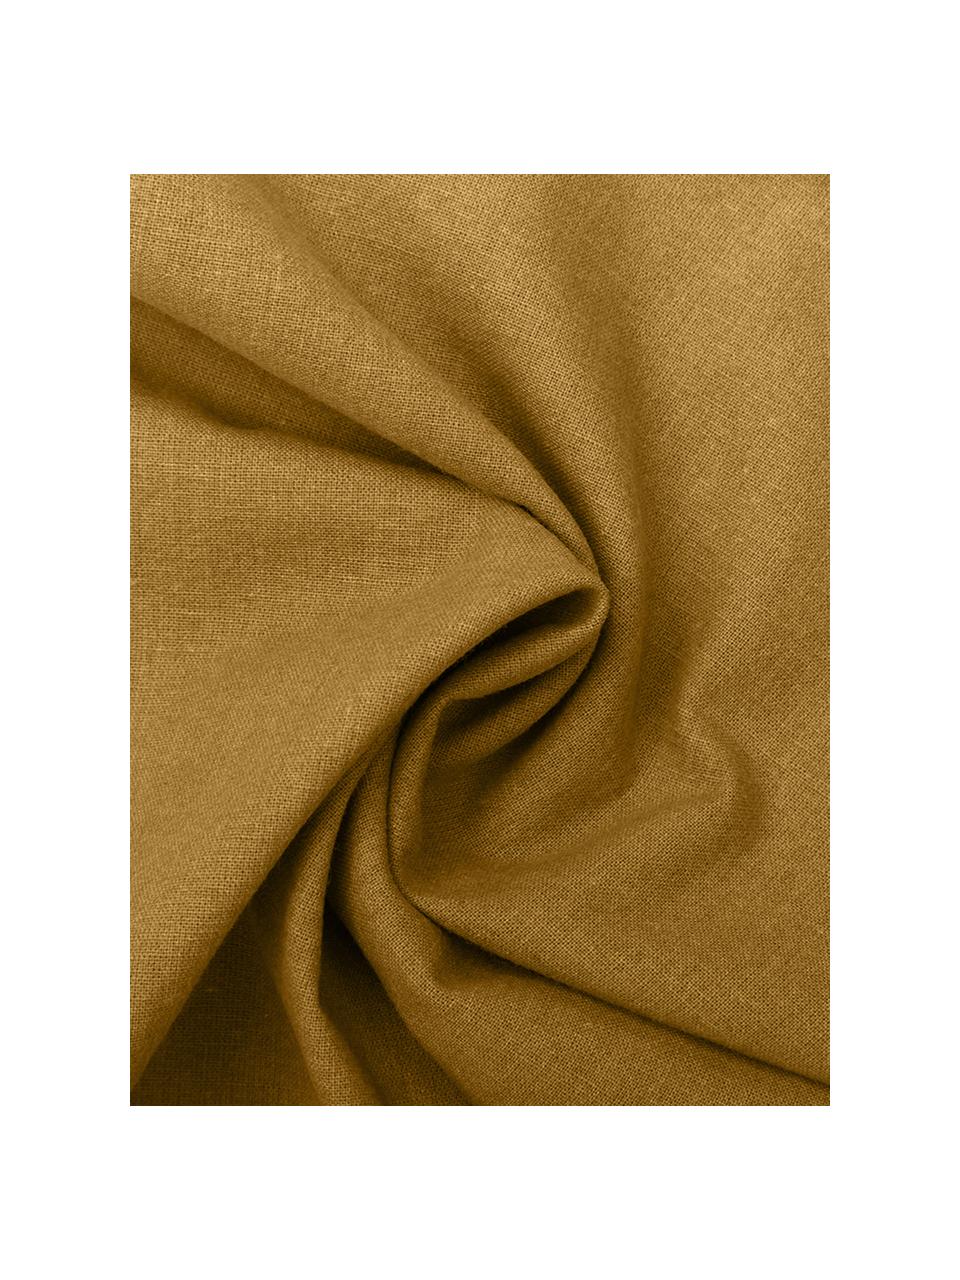 Pościel z bawełny z efektem sprania Arlene, Żółty, 135 x 200 cm + 1 poduszka 80 x 80 cm